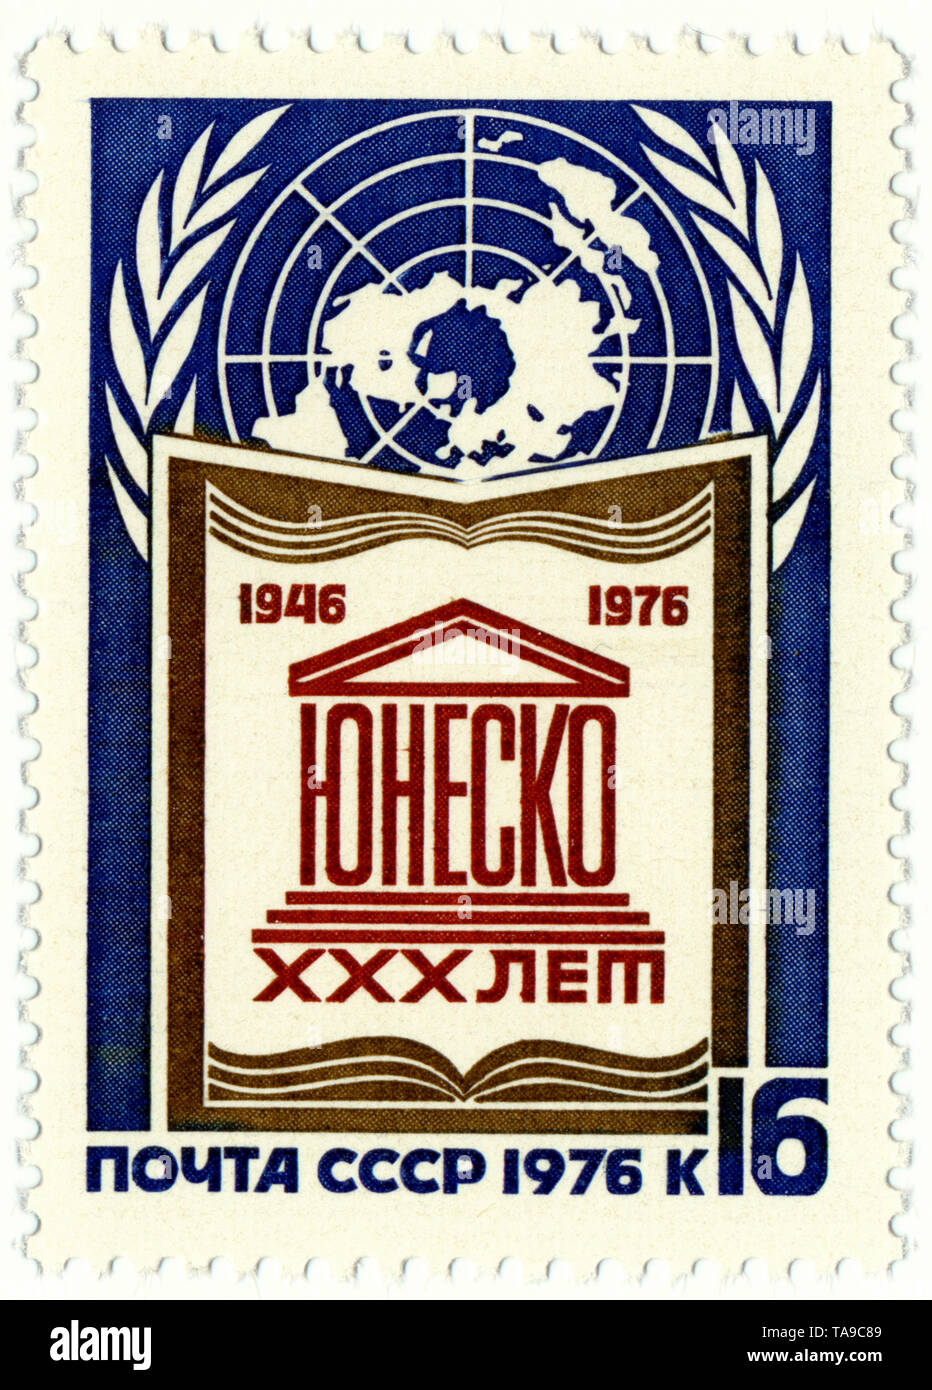 Sellos postales históricas de la URSS, por motivos políticos, el 30º Aniversario de las Naciones Unidas, UNESCO, 1976, Historische Briefmarken, zum 30. Jahrestag der Vereinten Nationen, UNESCO, 1976, UDSSR Foto de stock